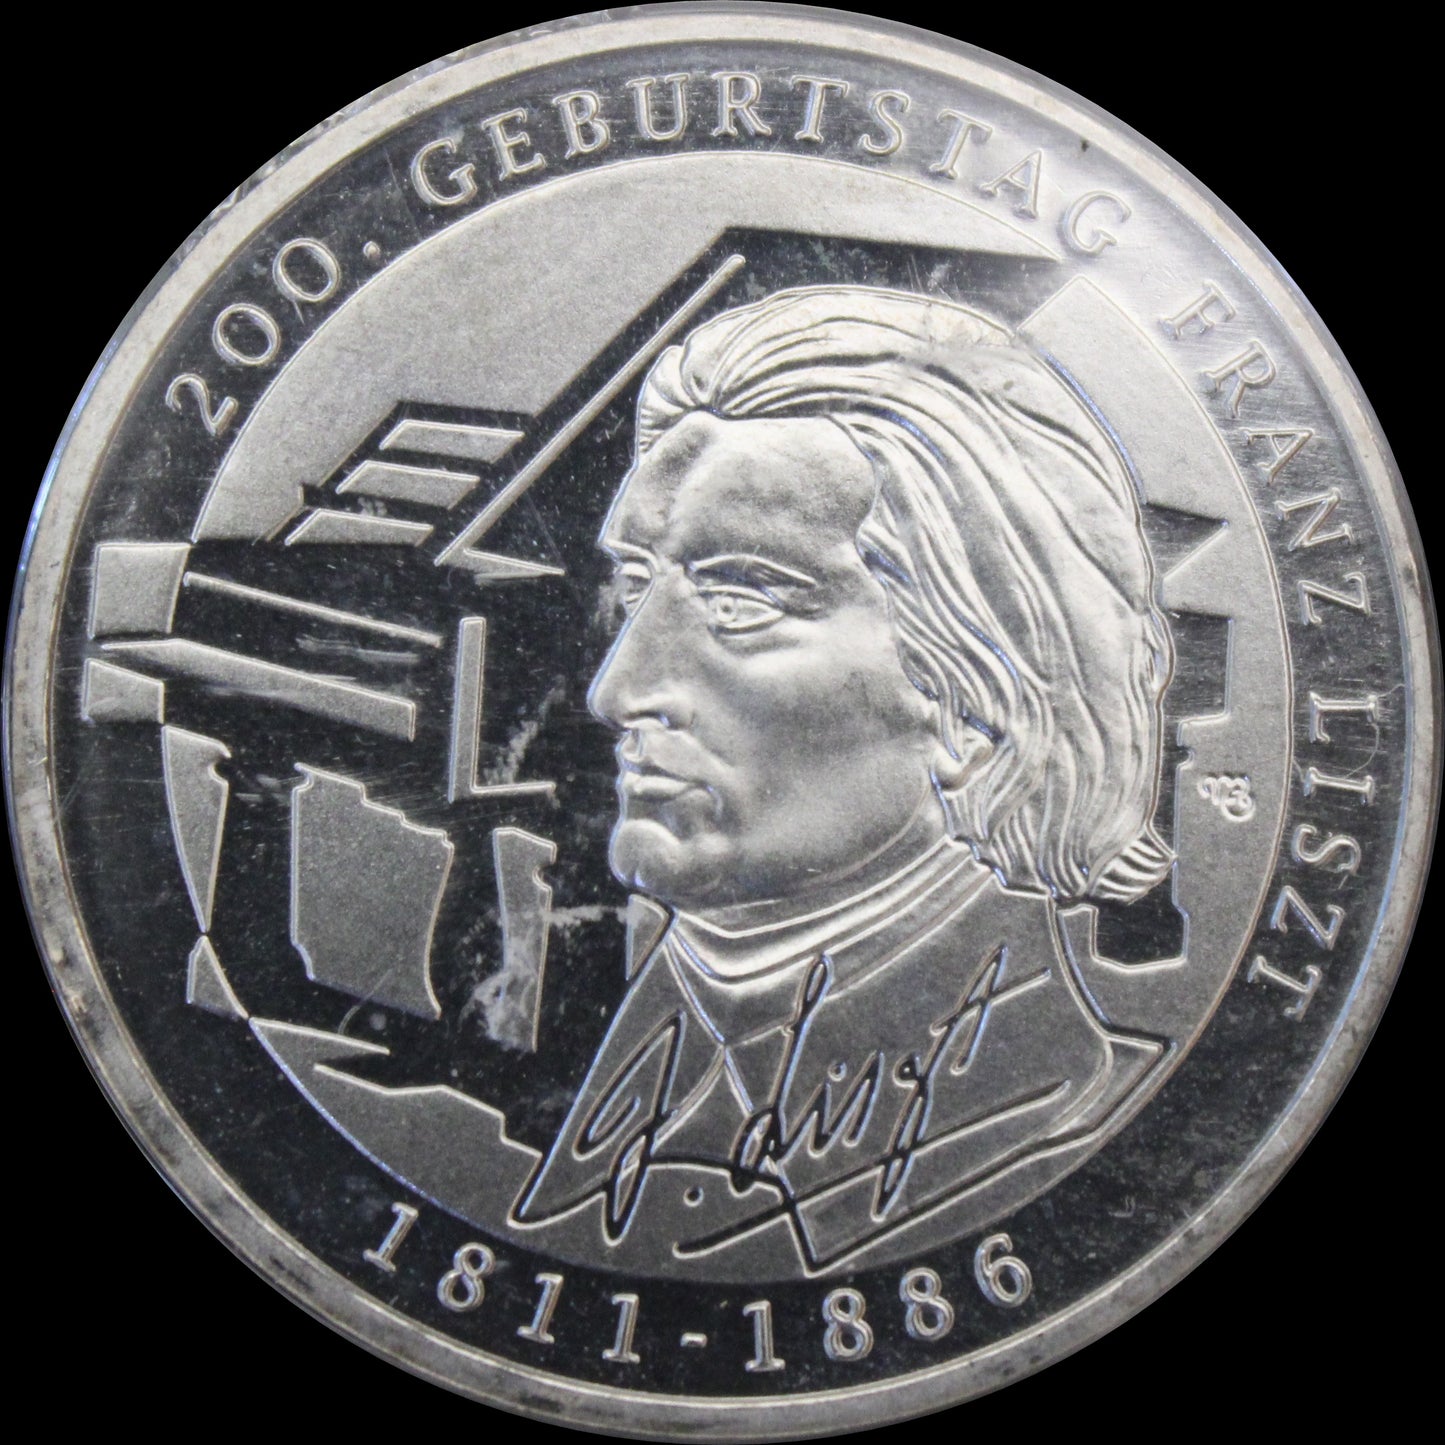 200. GEBURTSTAG FANZ LISZT, Serie 10 € Silber Gedenkmünzen Deutschland, Stempelglanz, 2011